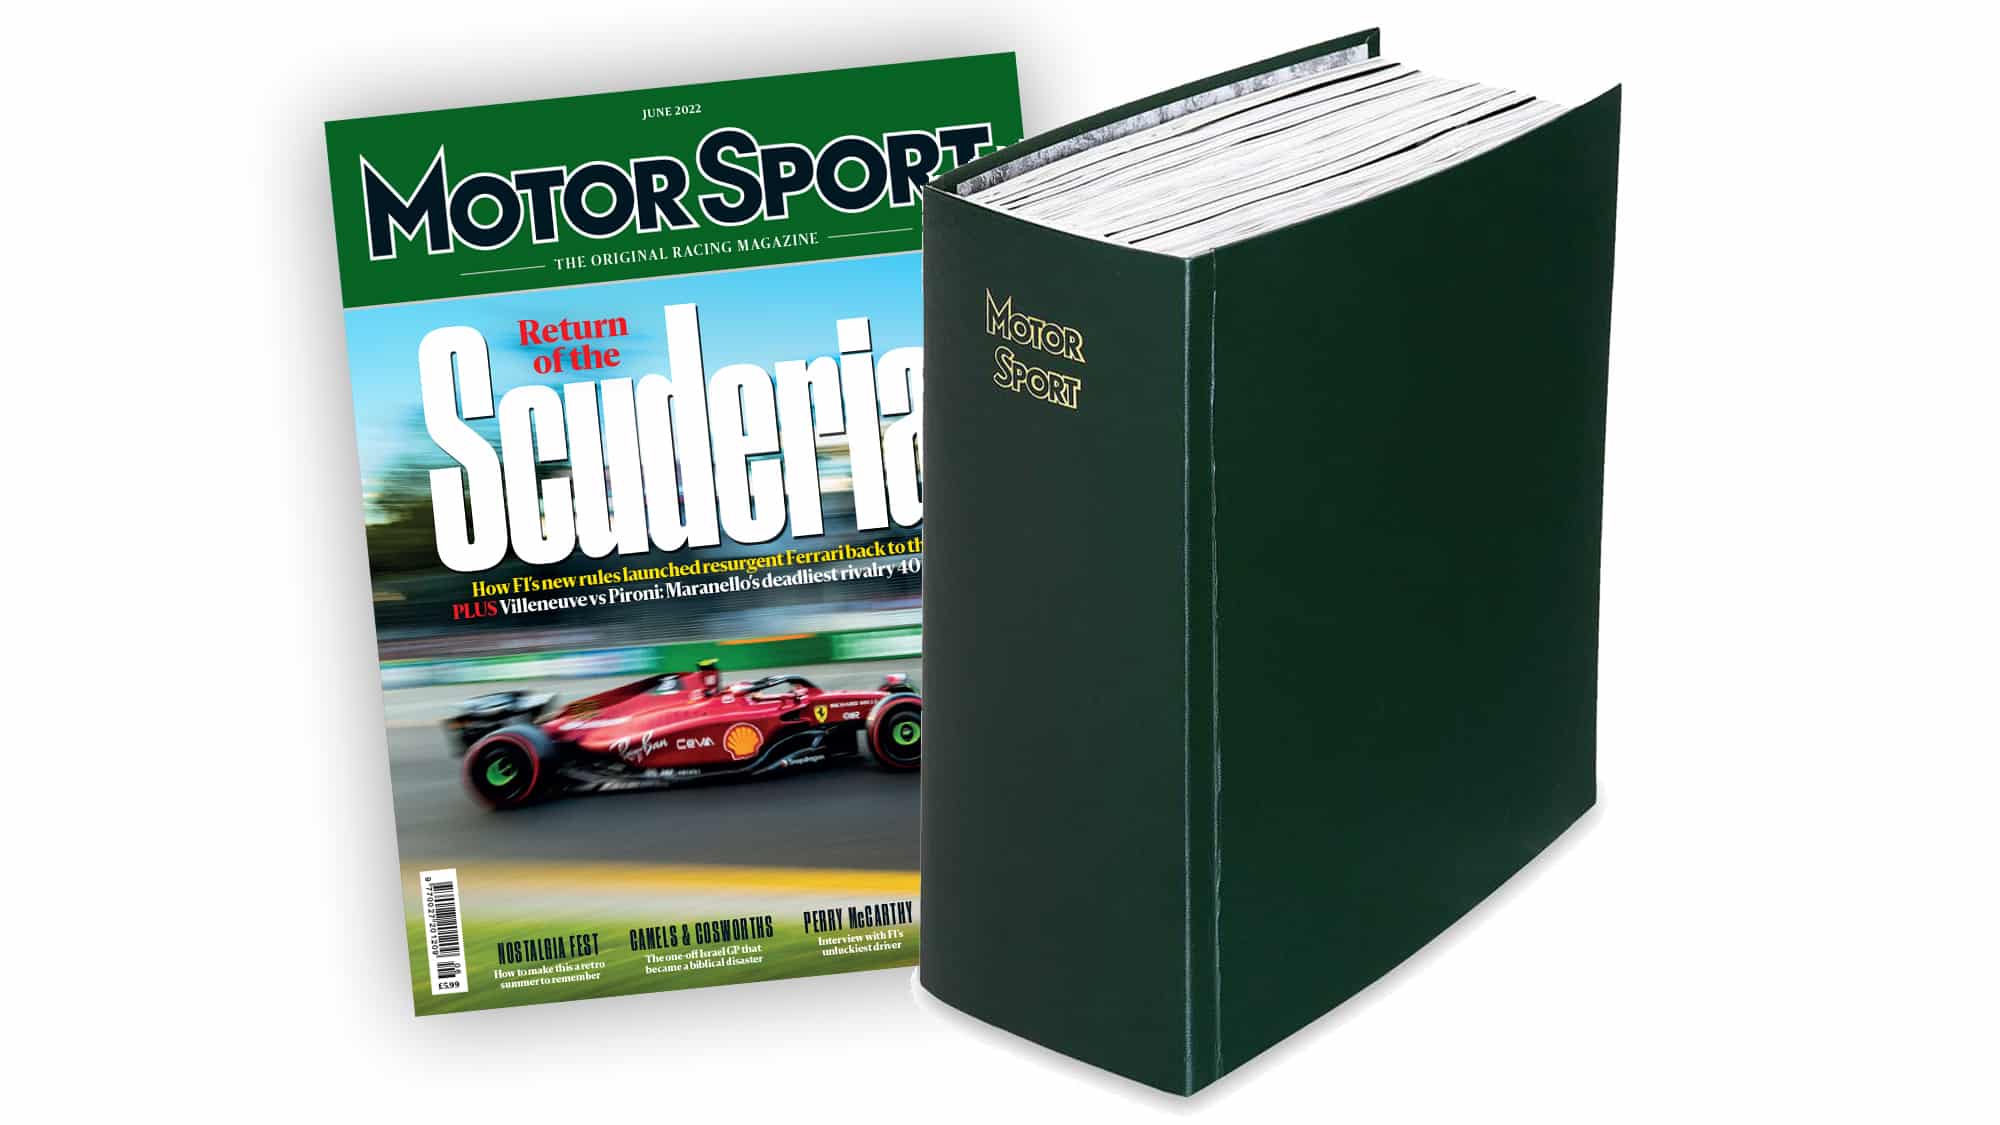 Motor Sport binder subscription offer